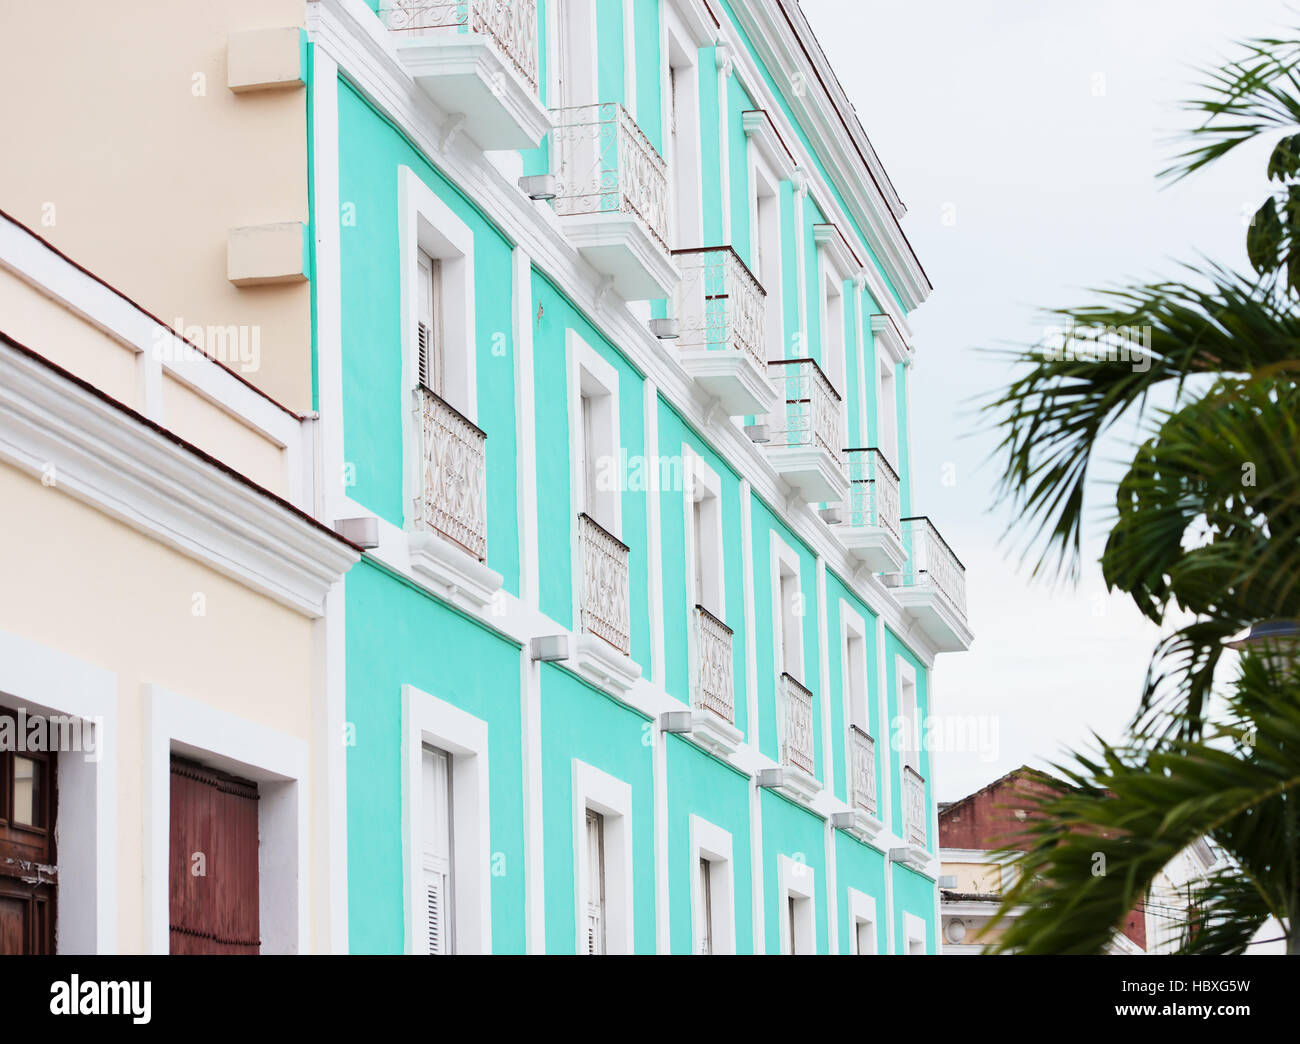 Cienfuegos, Cuba - edificios antiguos Foto de stock